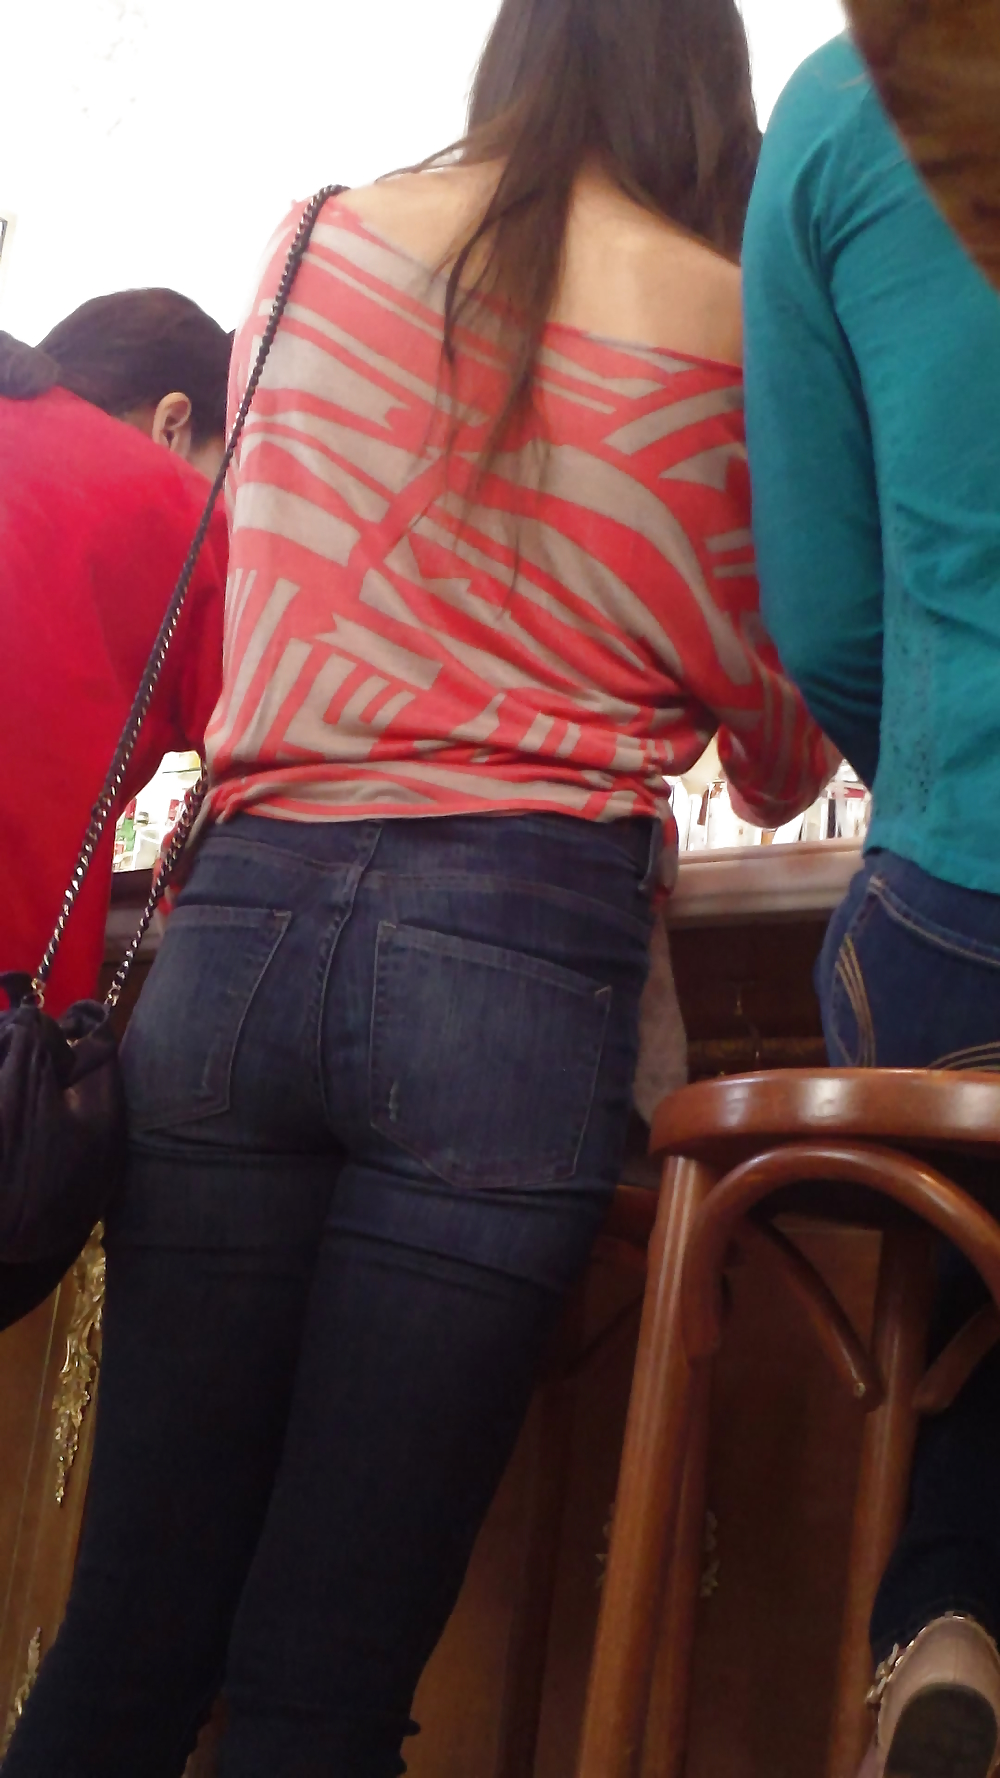 Popular teen girls butt & ass in jeans part 2 #24180989